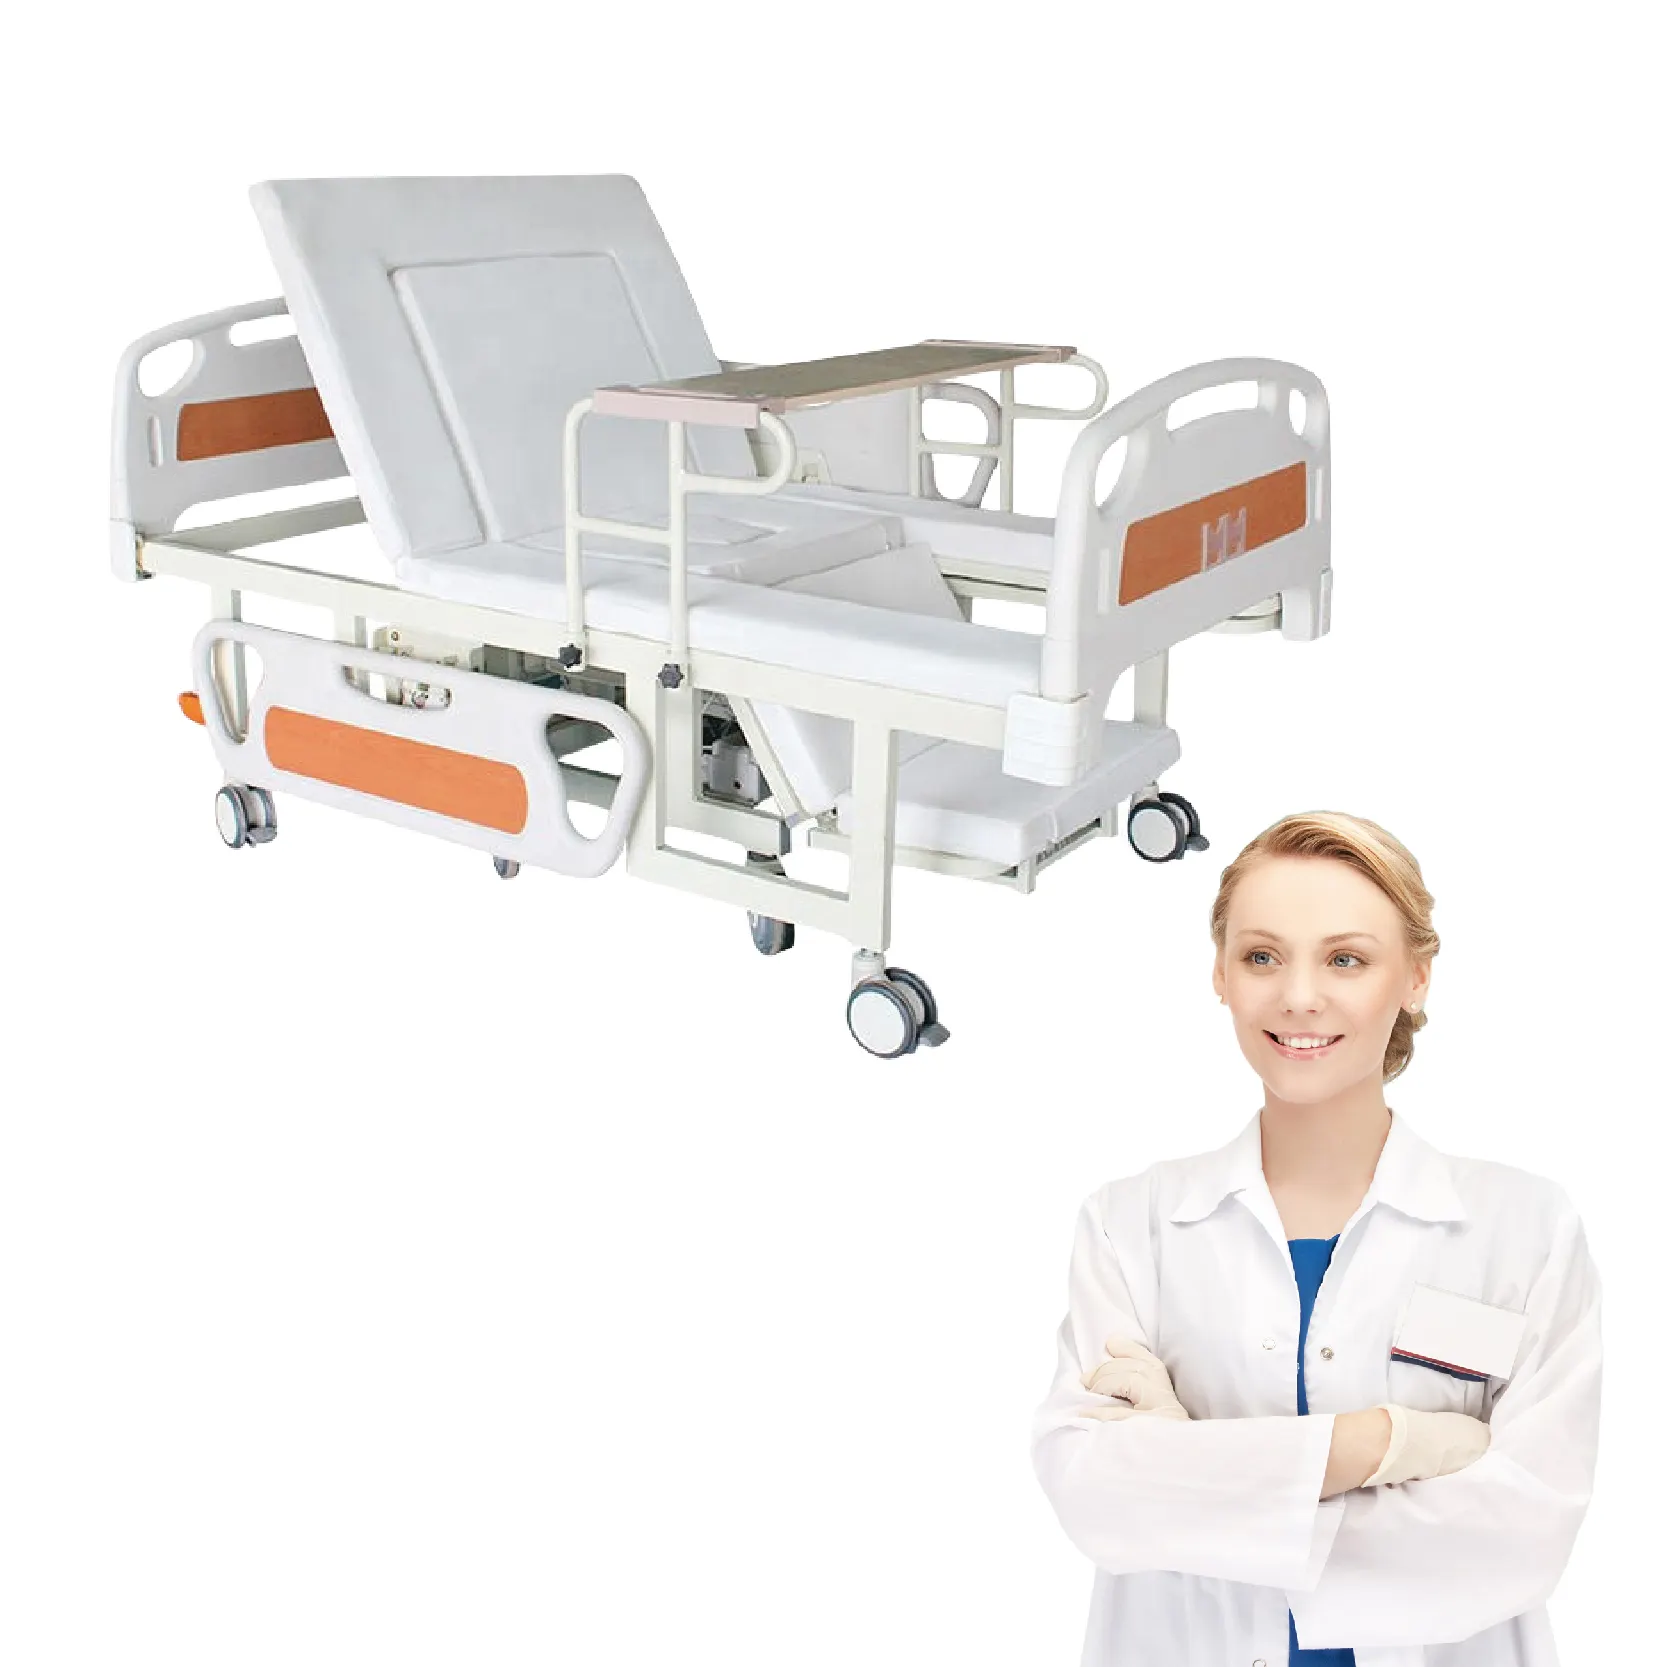 Novo design de cabeceira de hospital com 2 manivelas em ABS, cama manual para pacientes com acidente vascular cerebral